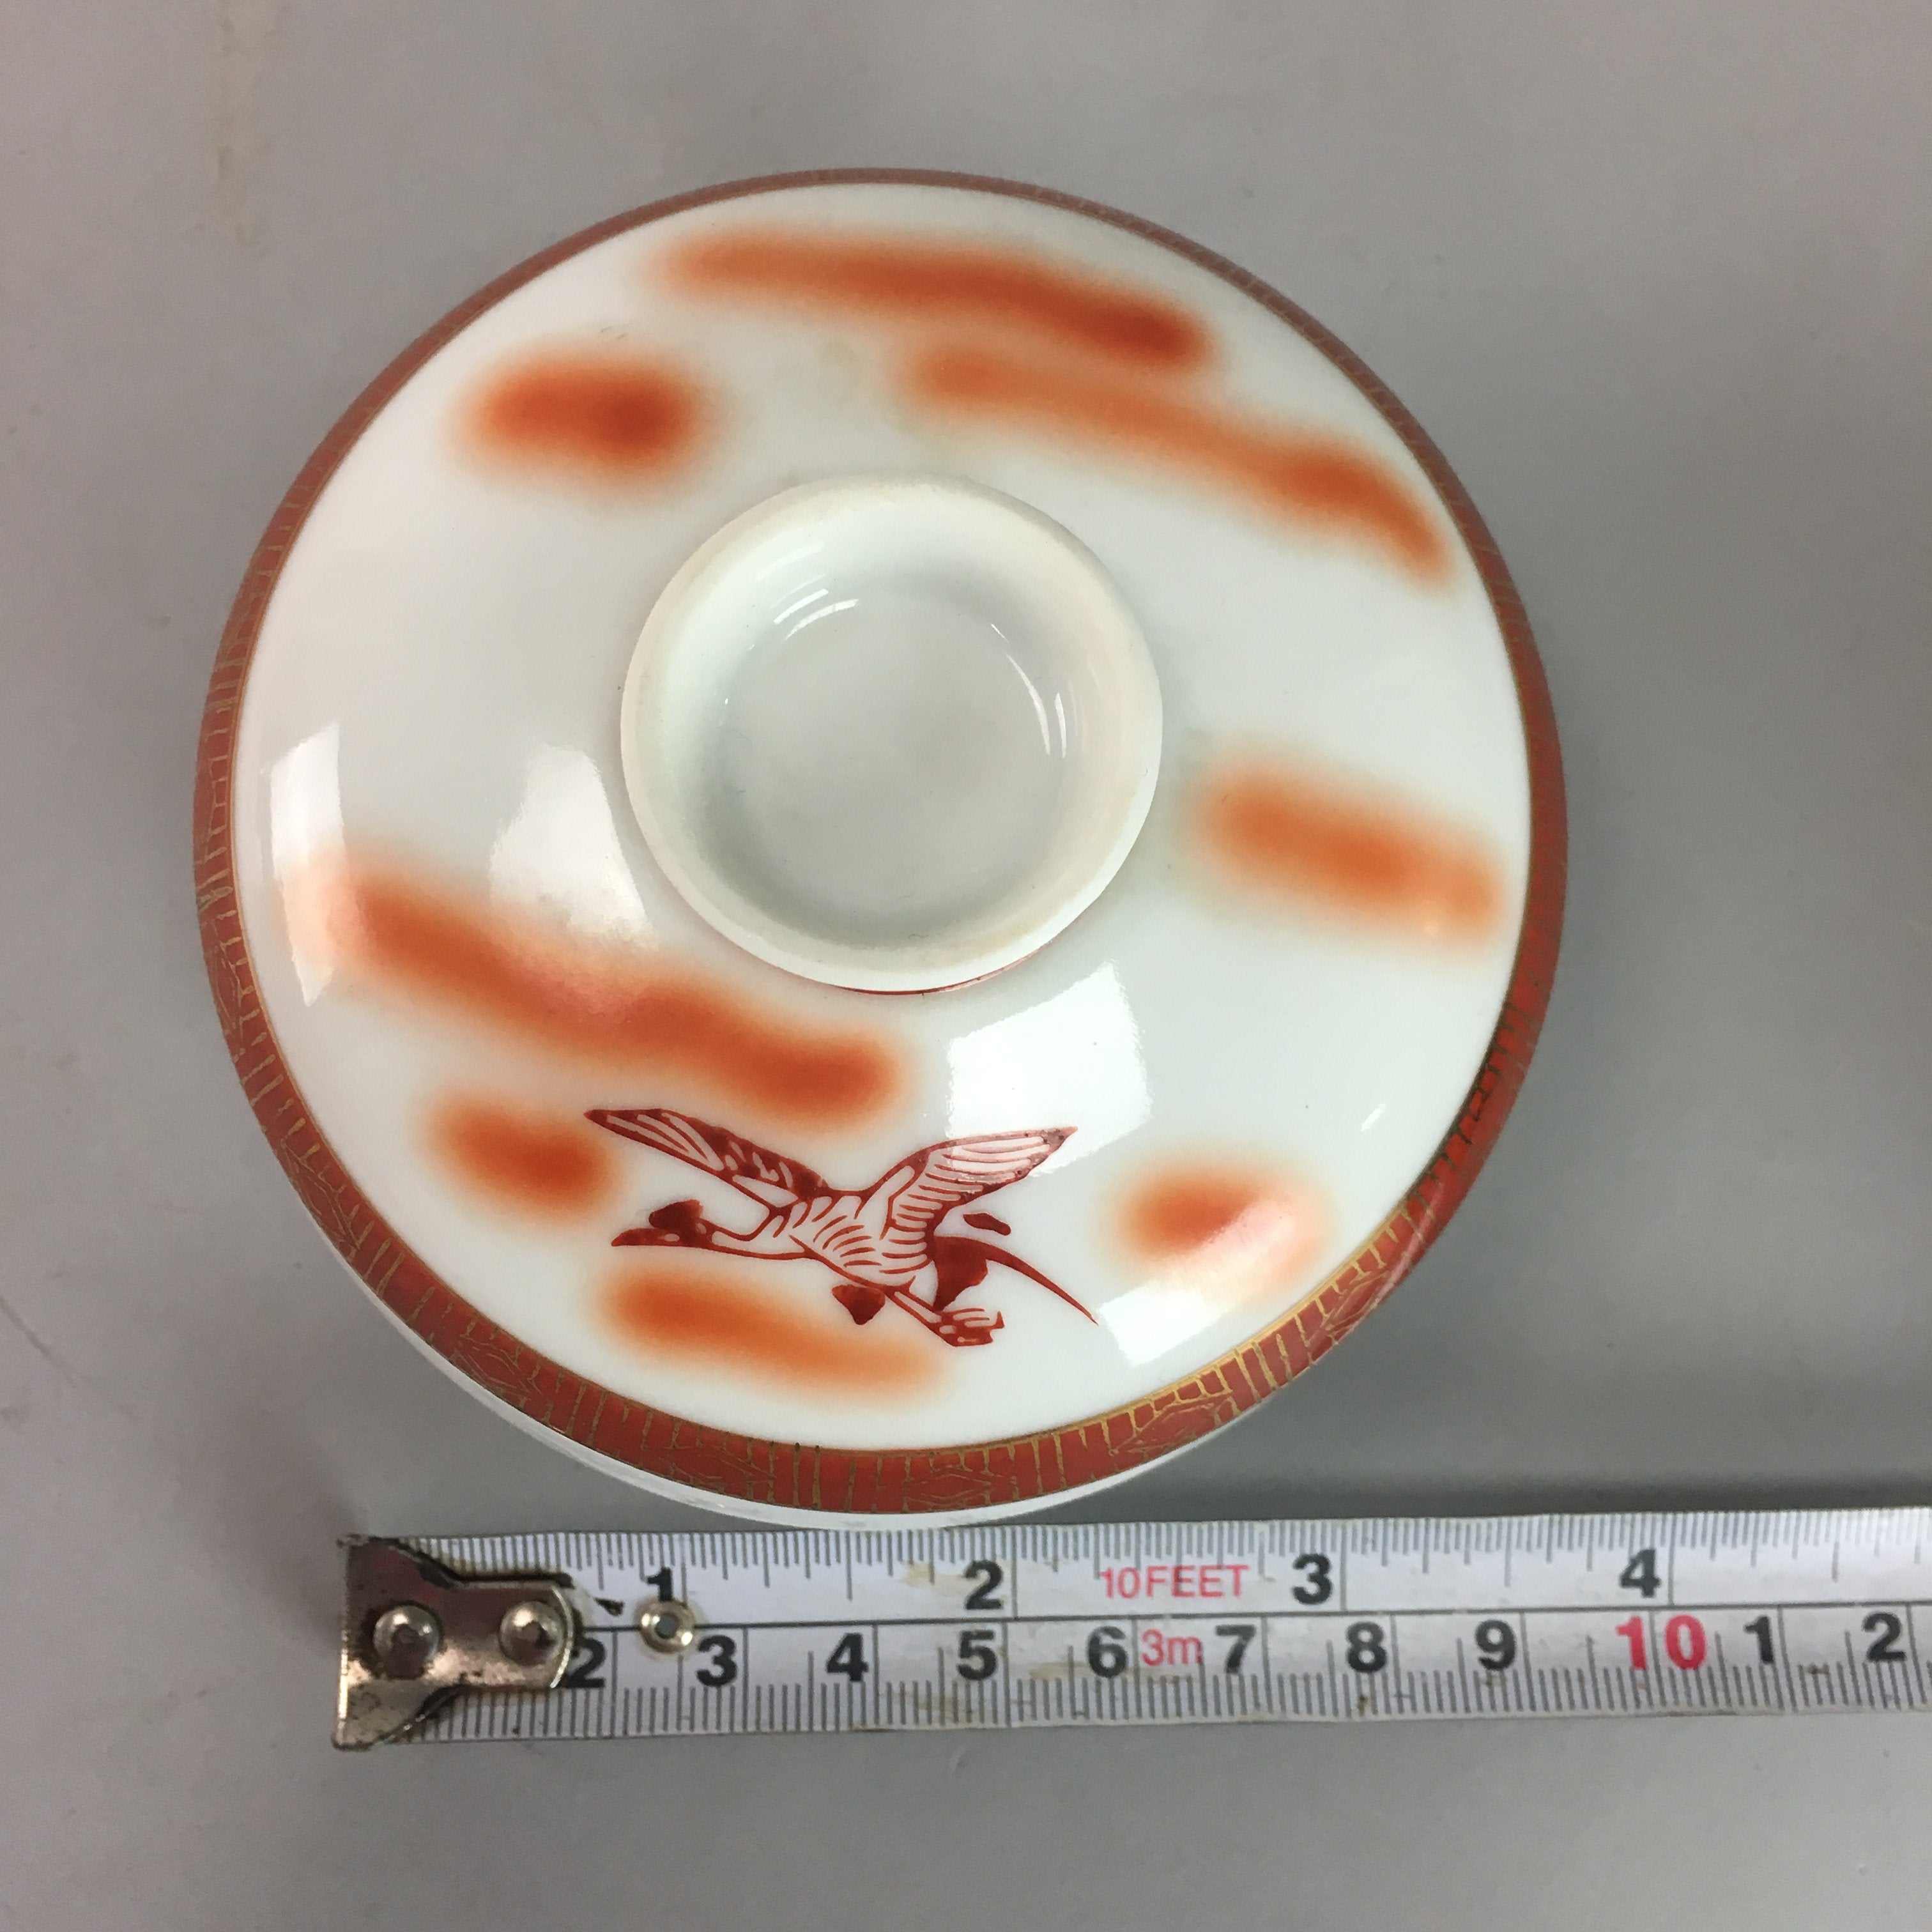 Japanese Porcelain Lidded Bowl Vtg Kobachi Red Crane Plum Blossom Floral PT245